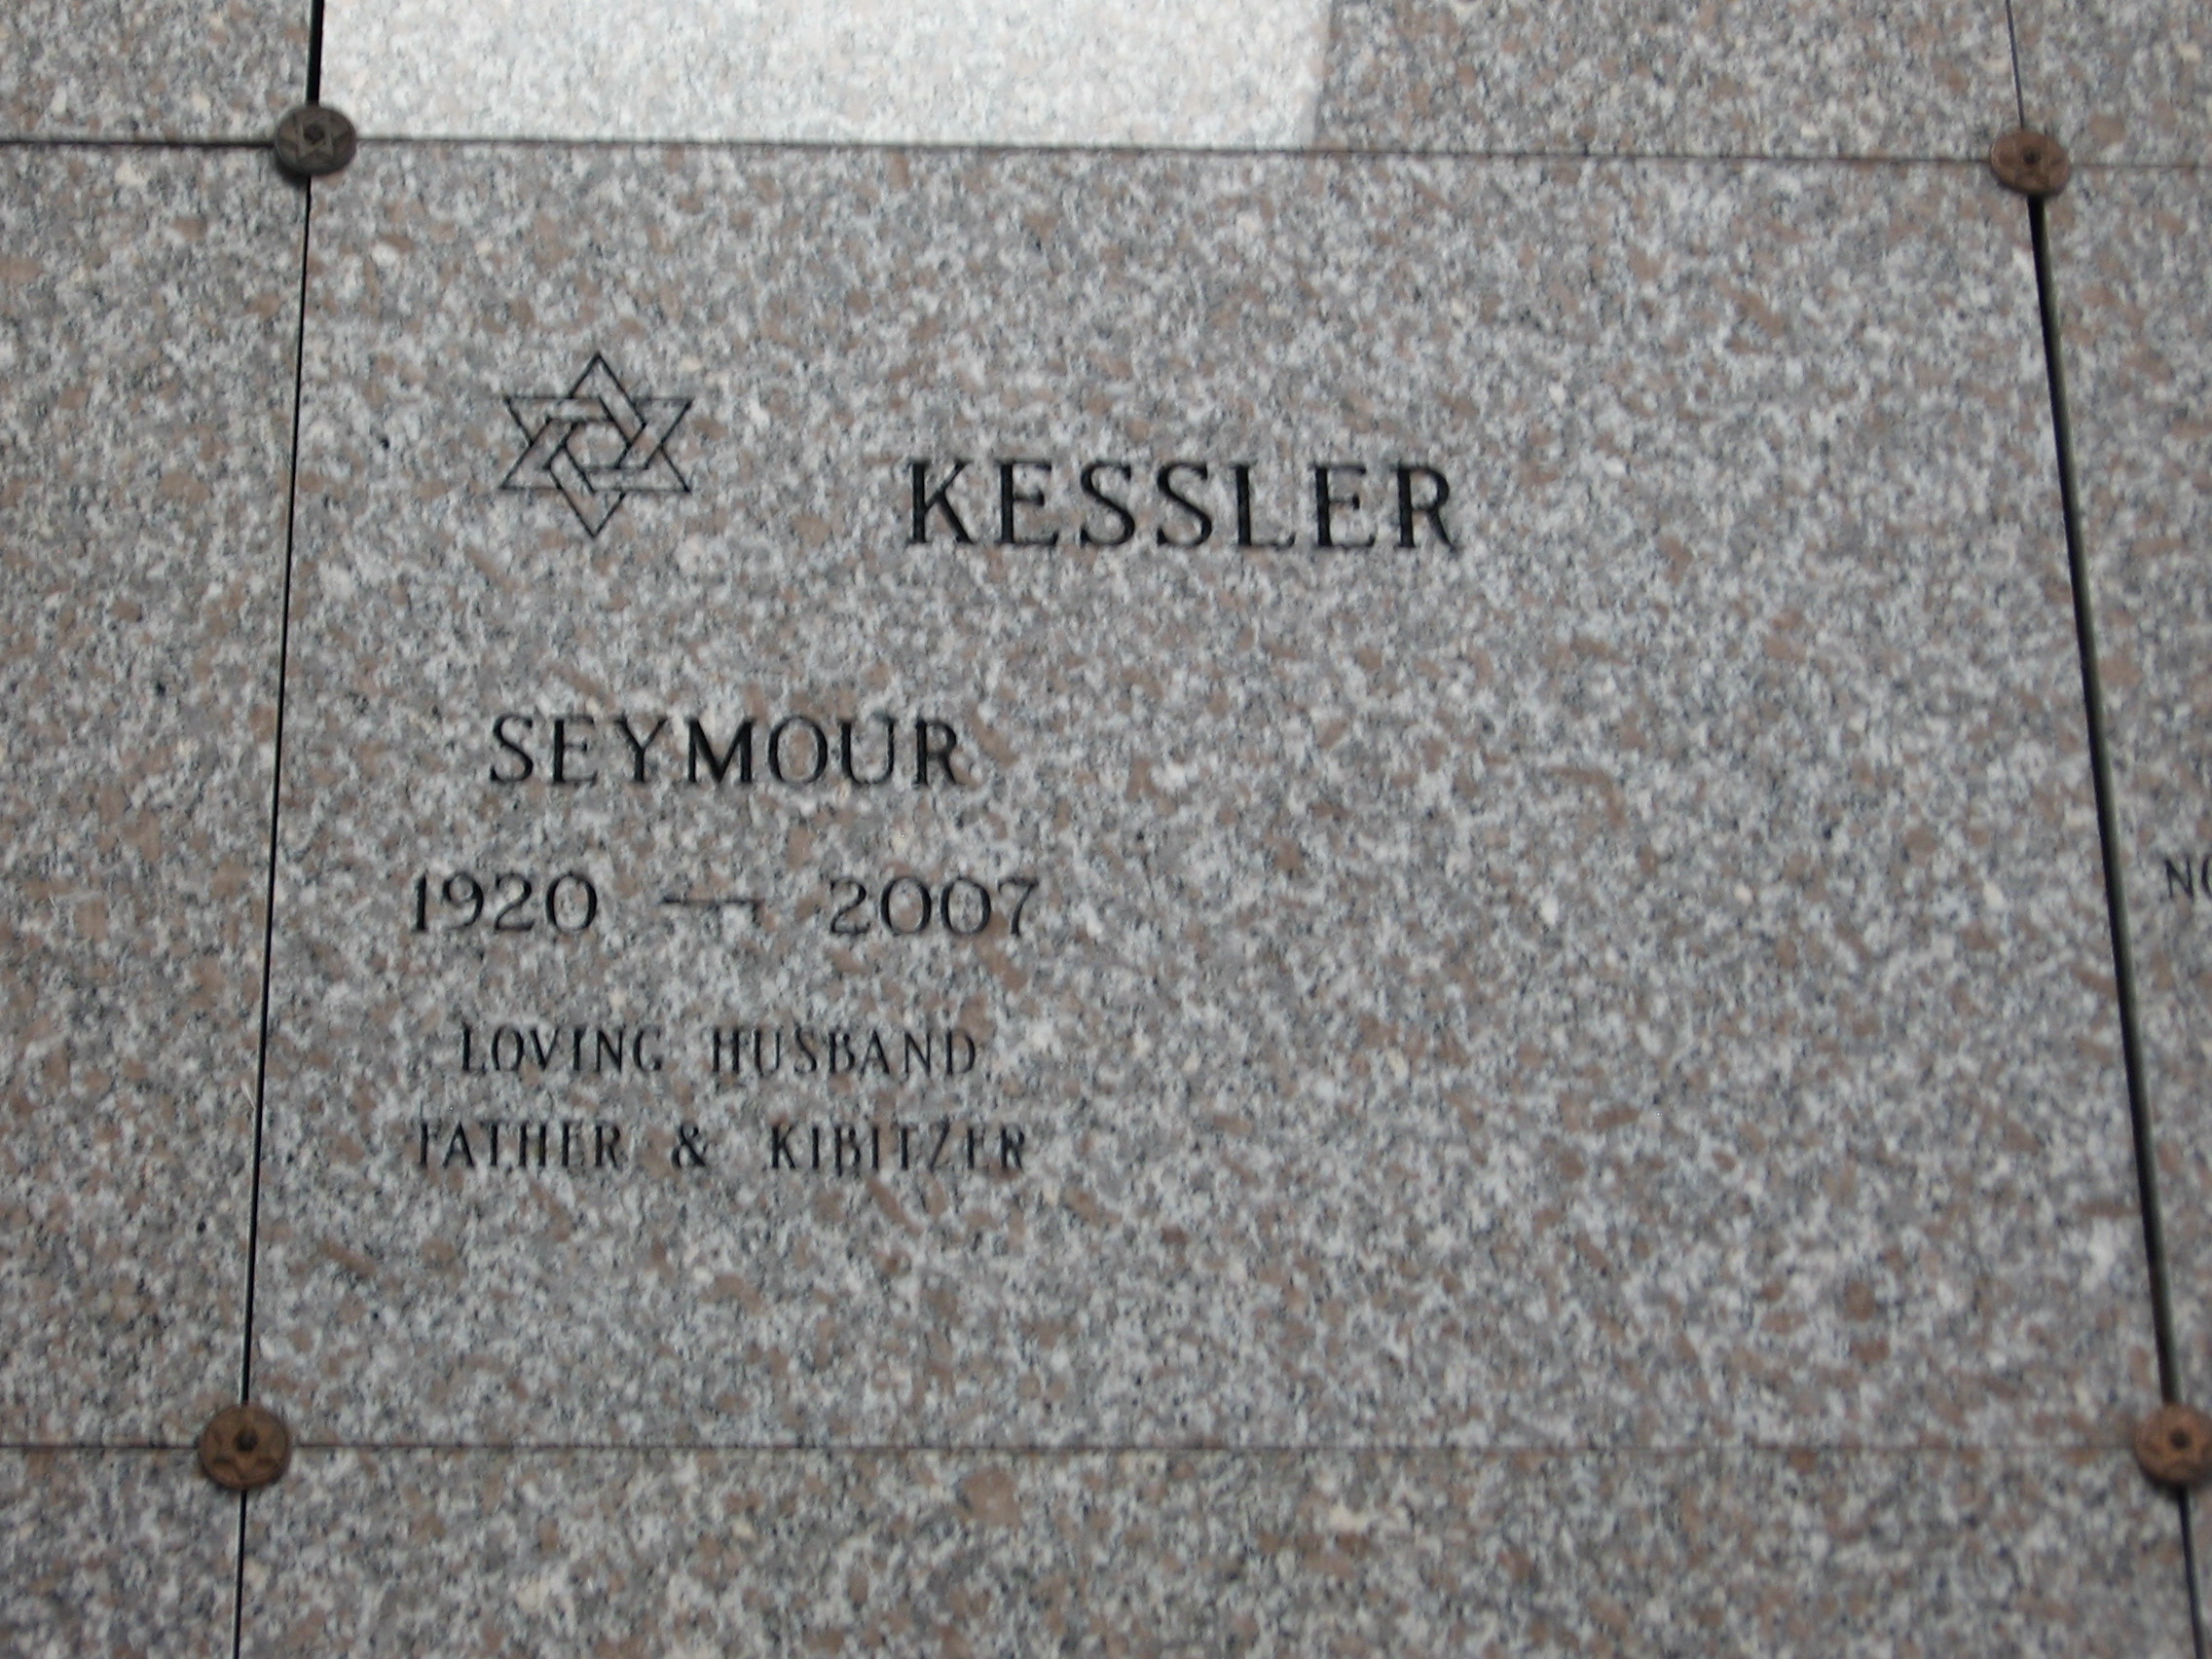 Seymour Kesseler